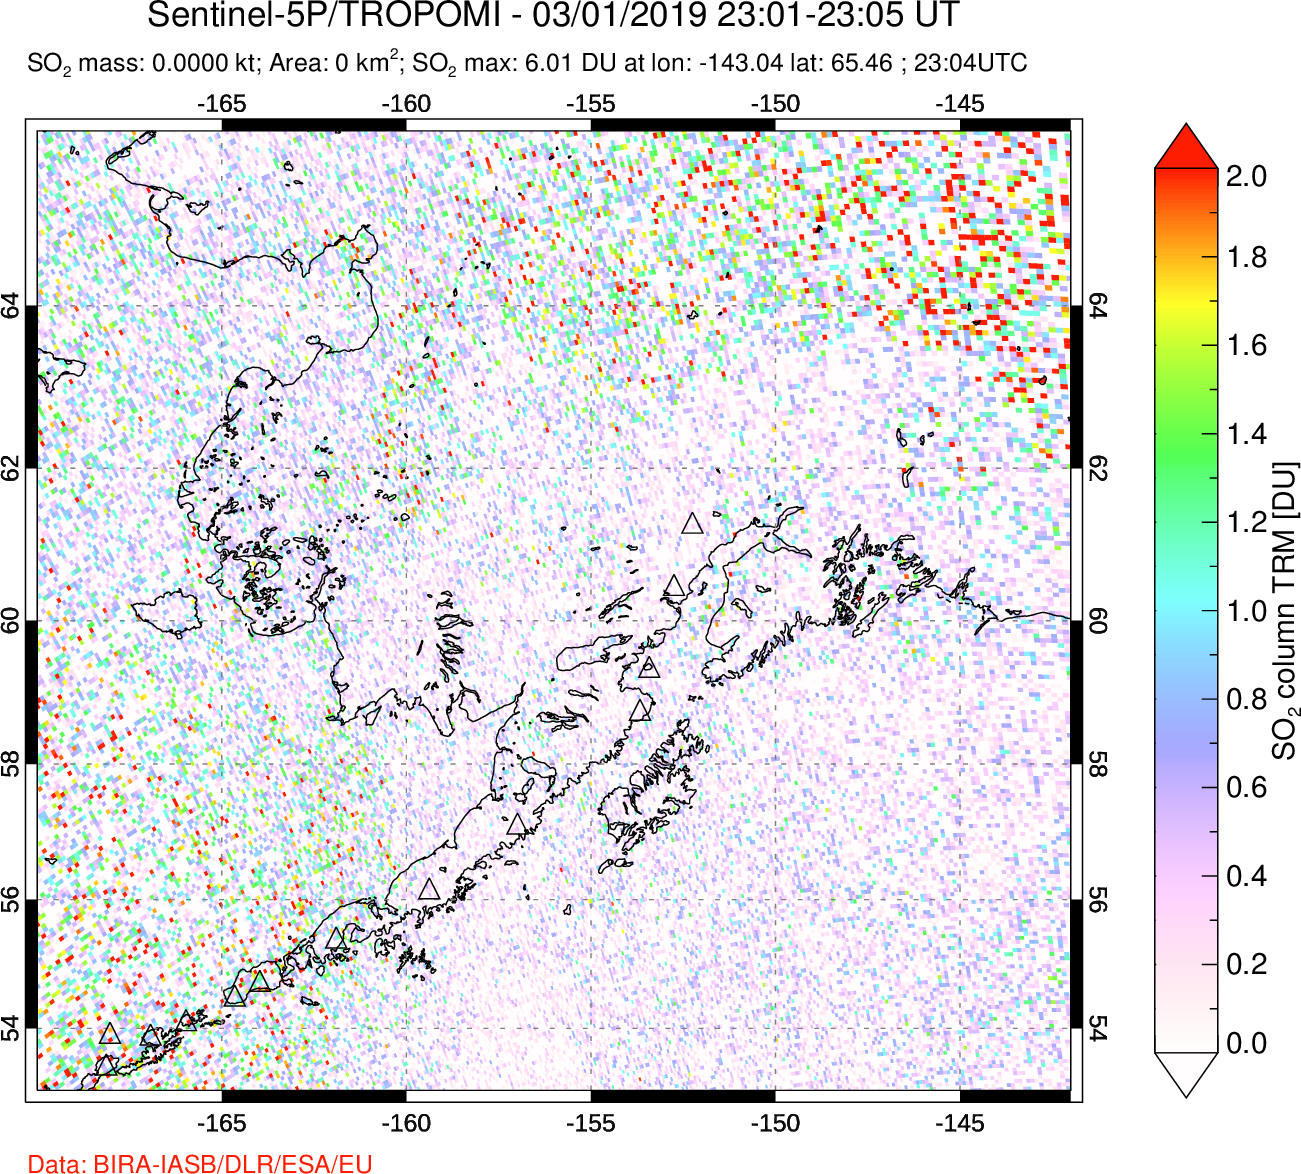 A sulfur dioxide image over Alaska, USA on Mar 01, 2019.